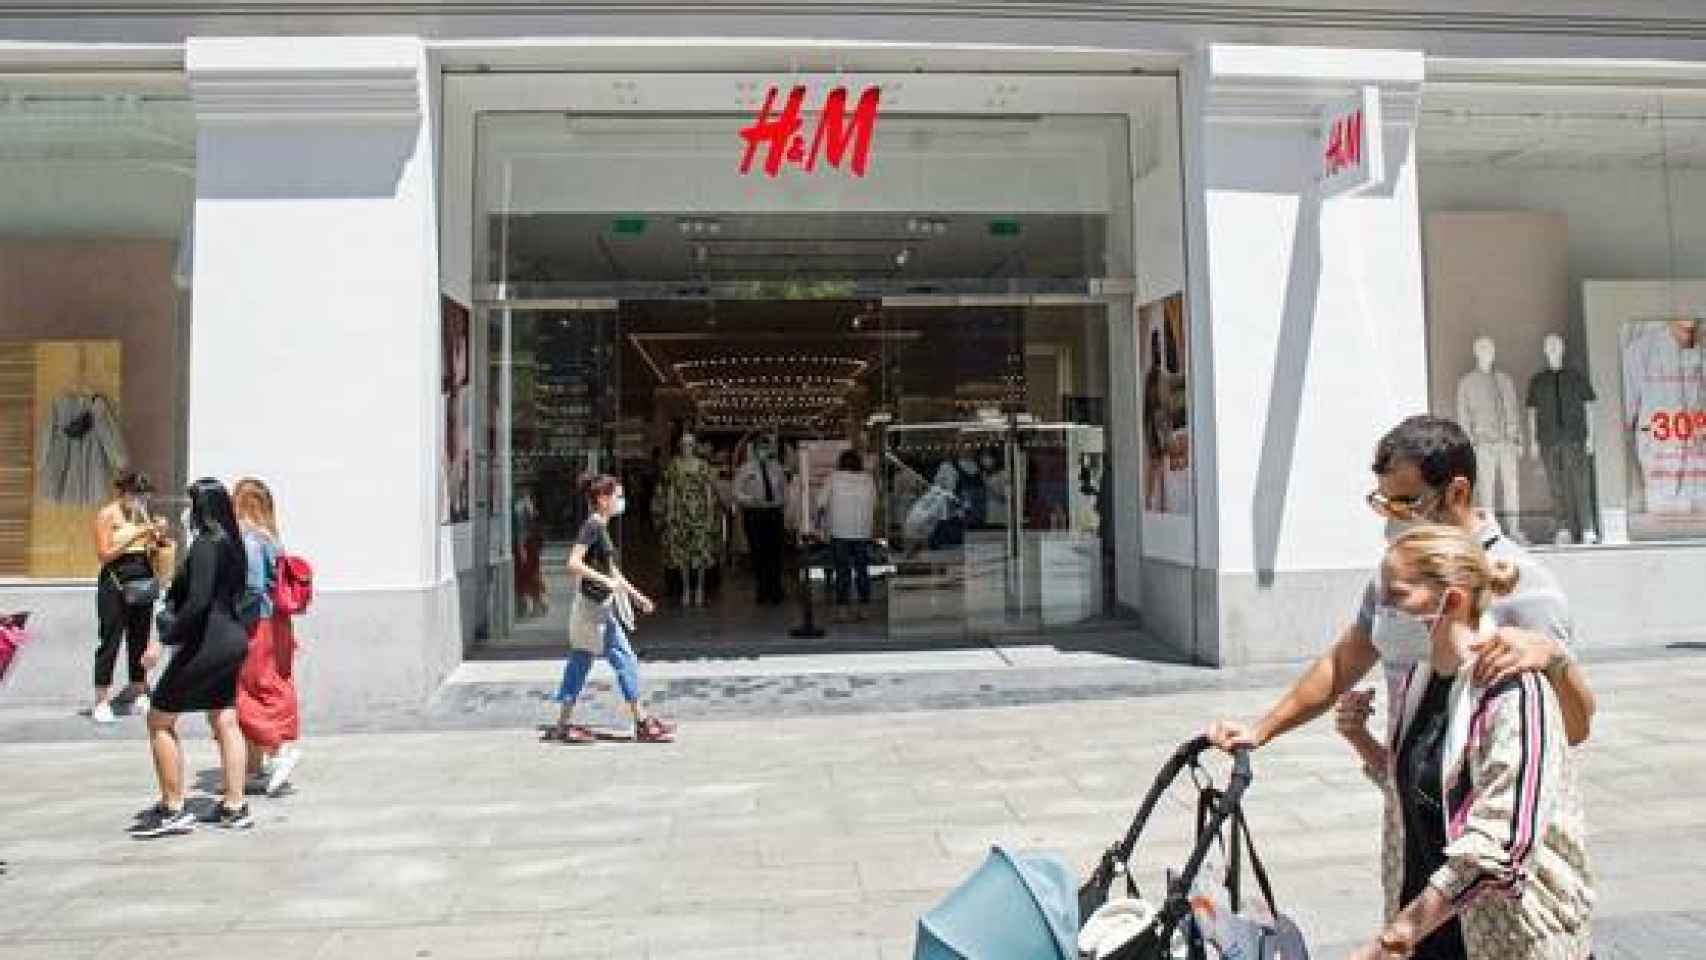 Pueta de H&M en la Gran Vía de Madrid.